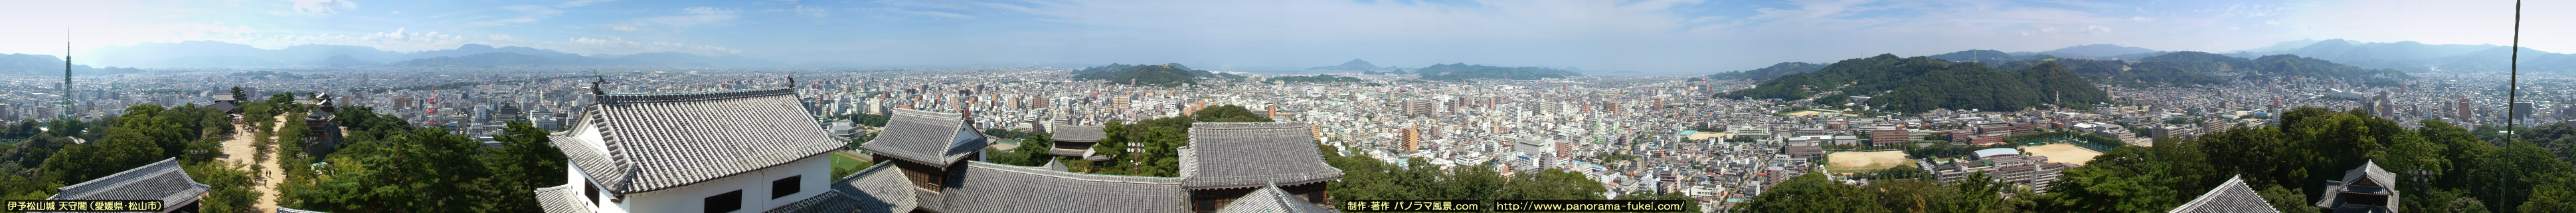 伊予松山城 天守閣からの360度パノラマ風景写真